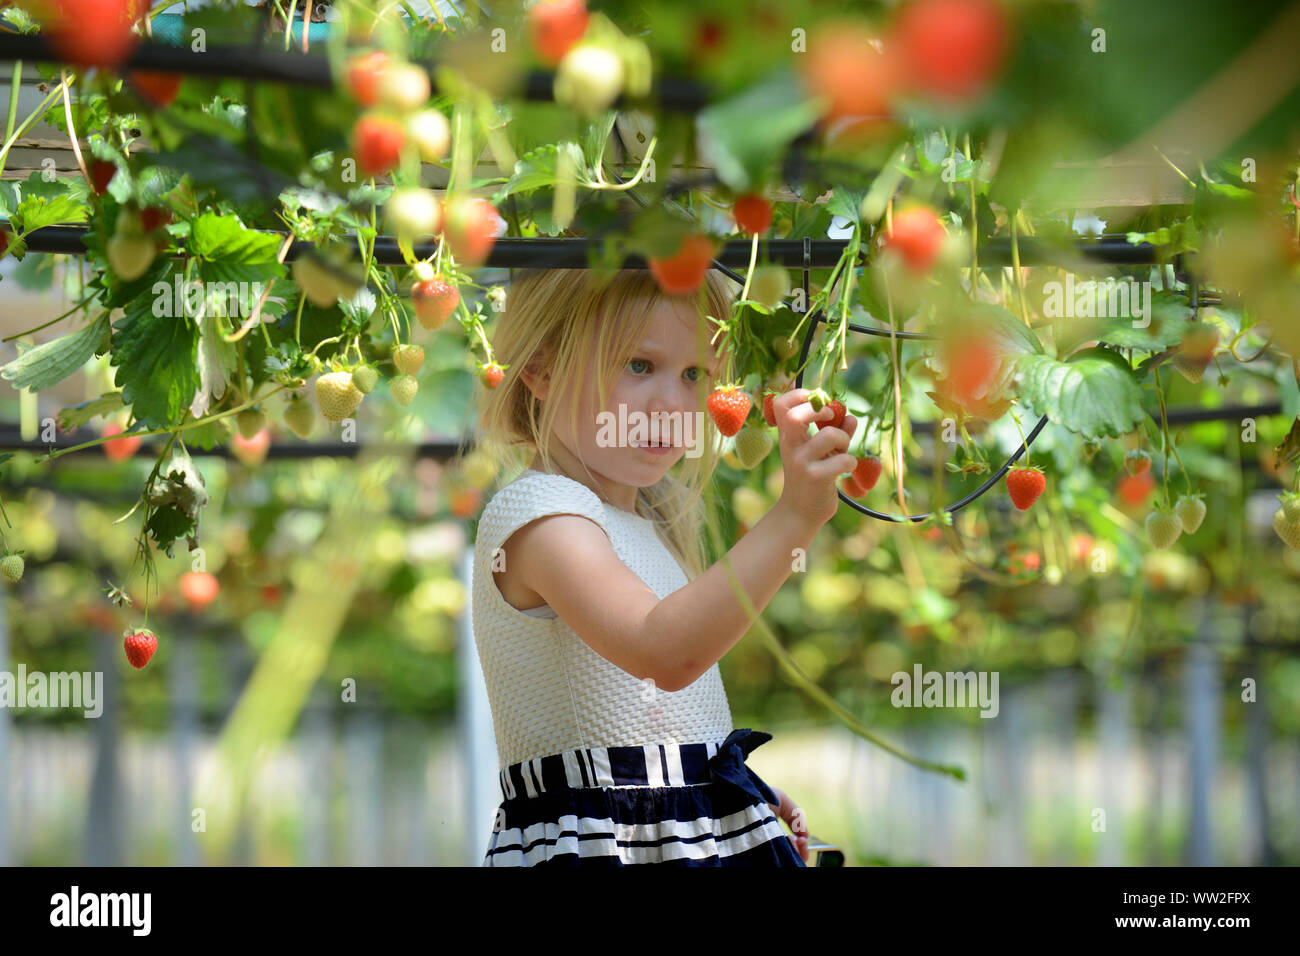 Une jeune fille ramasse des fraises et autres fruits au cours d'une visite à une ferme fruitière près d'Édimbourg, Écosse Banque D'Images